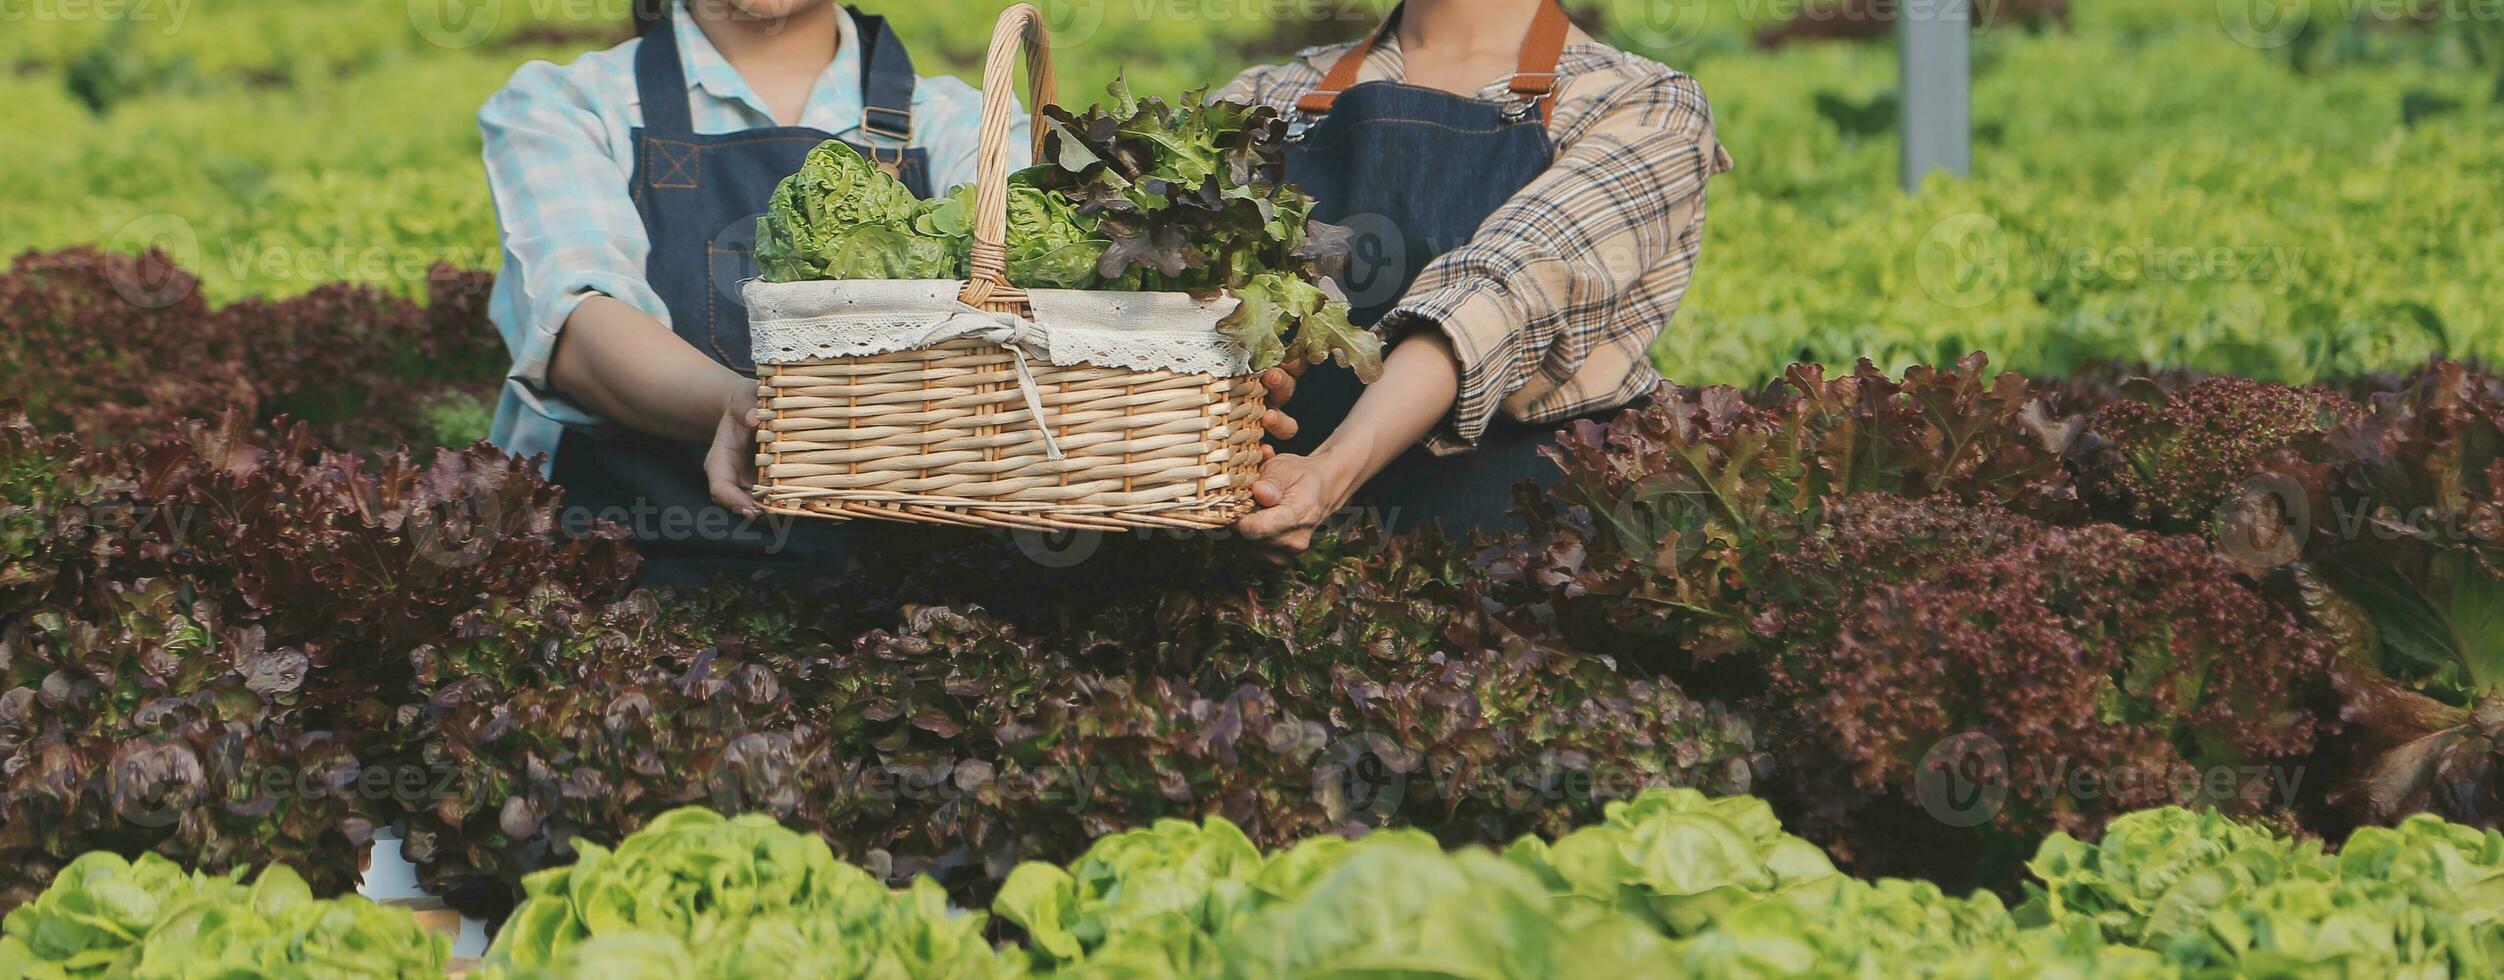 femme jardinier inspecte qualité de vert chêne salade dans serre jardinage. femelle asiatique horticulture agriculteur cultiver en bonne santé nutrition biologique salade des légumes dans hydroponique secteur agroalimentaire cultiver. photo